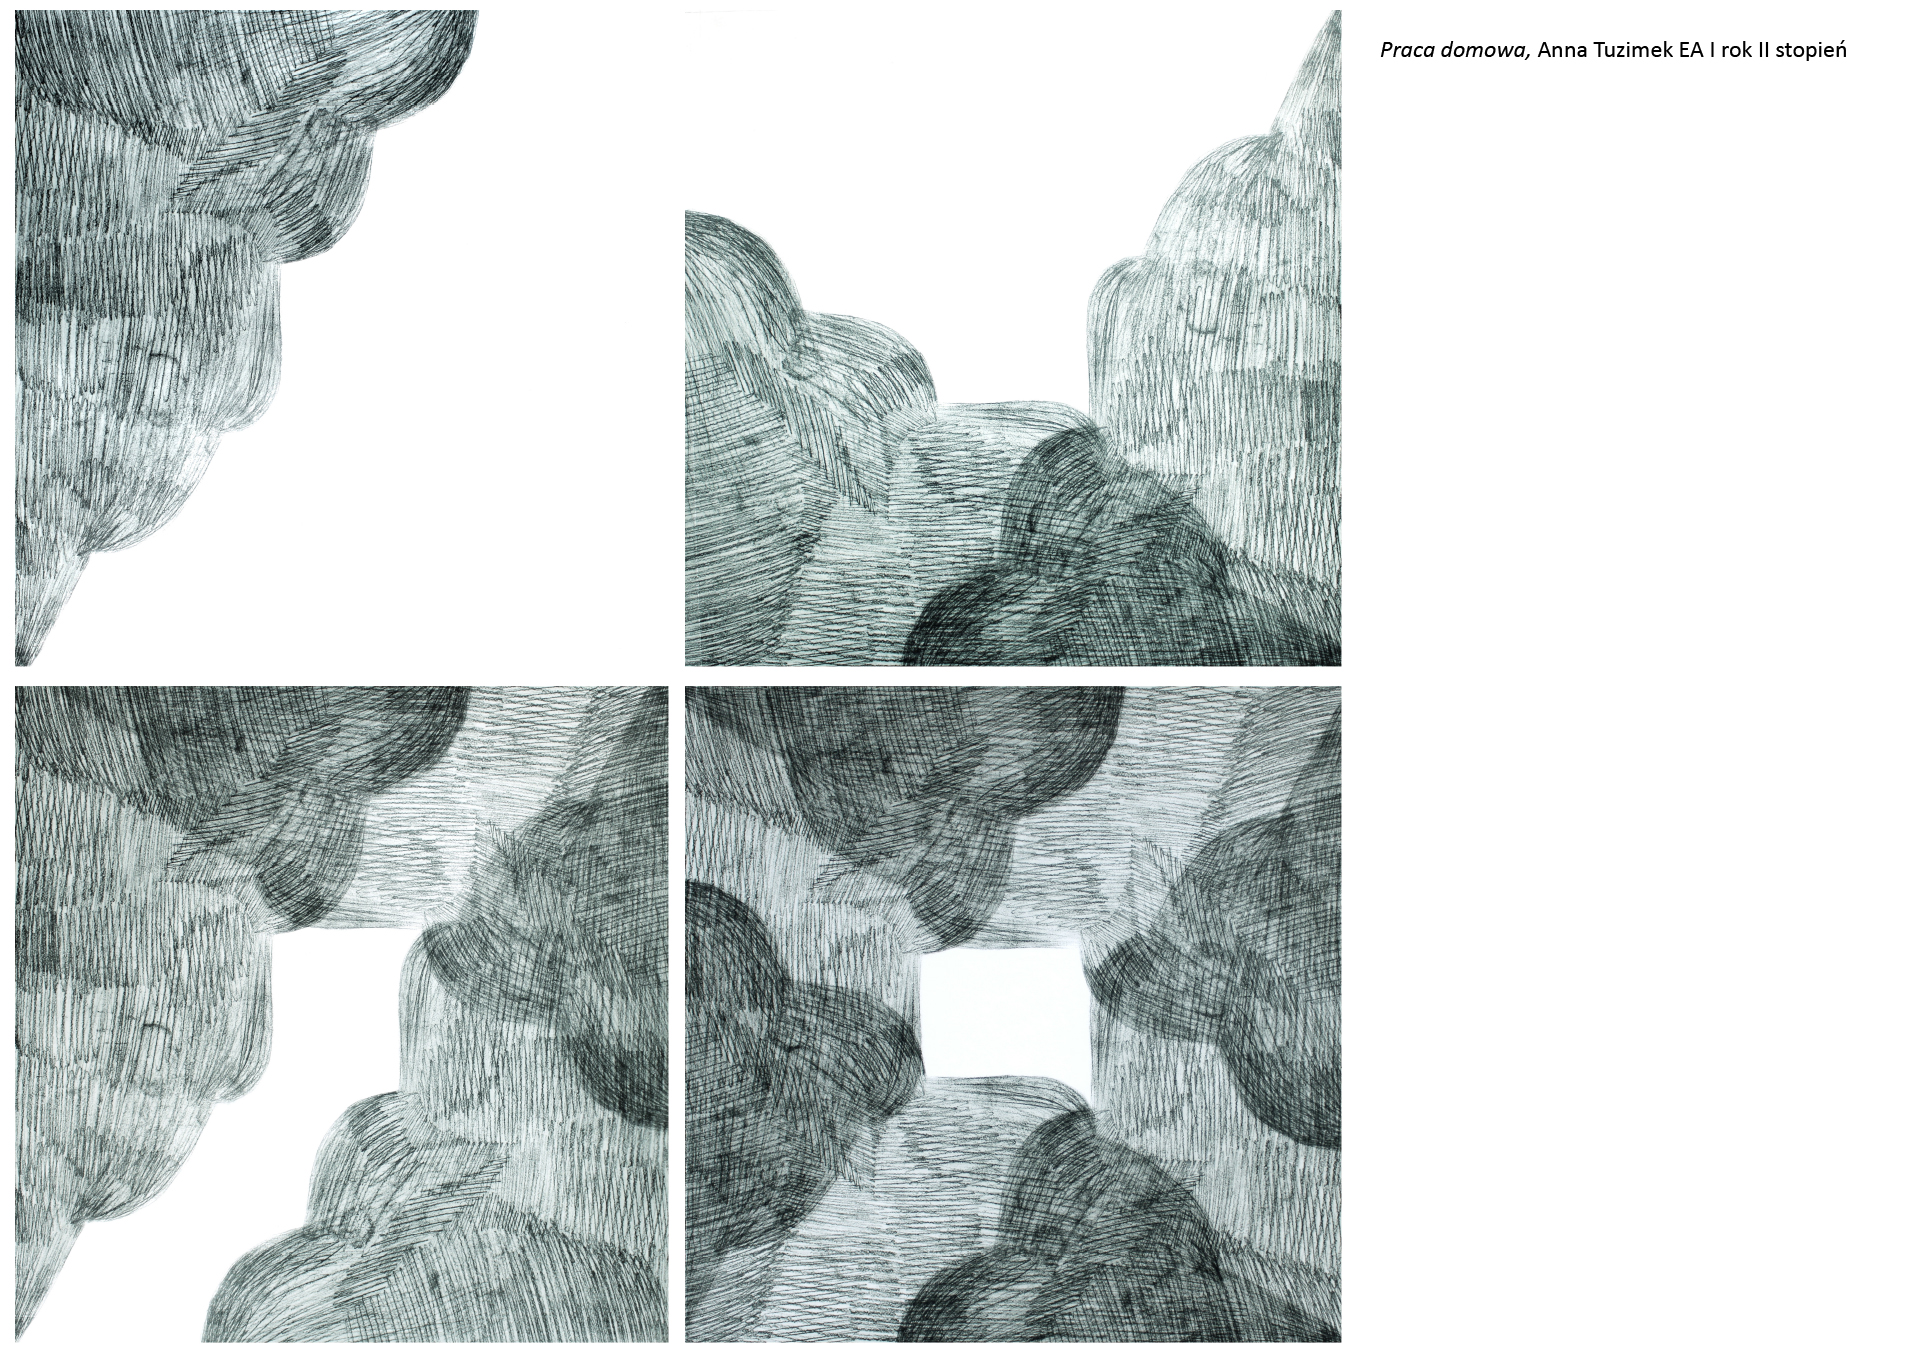 Tytuł: Praca domowa. Autorka: Anna Tuzimek. Cztery grafiki w odcieniu morskiej zieleni,  na obrazach nakładające się kształty geometryczne przypominające ilustracyjne przedstawienie chmur.